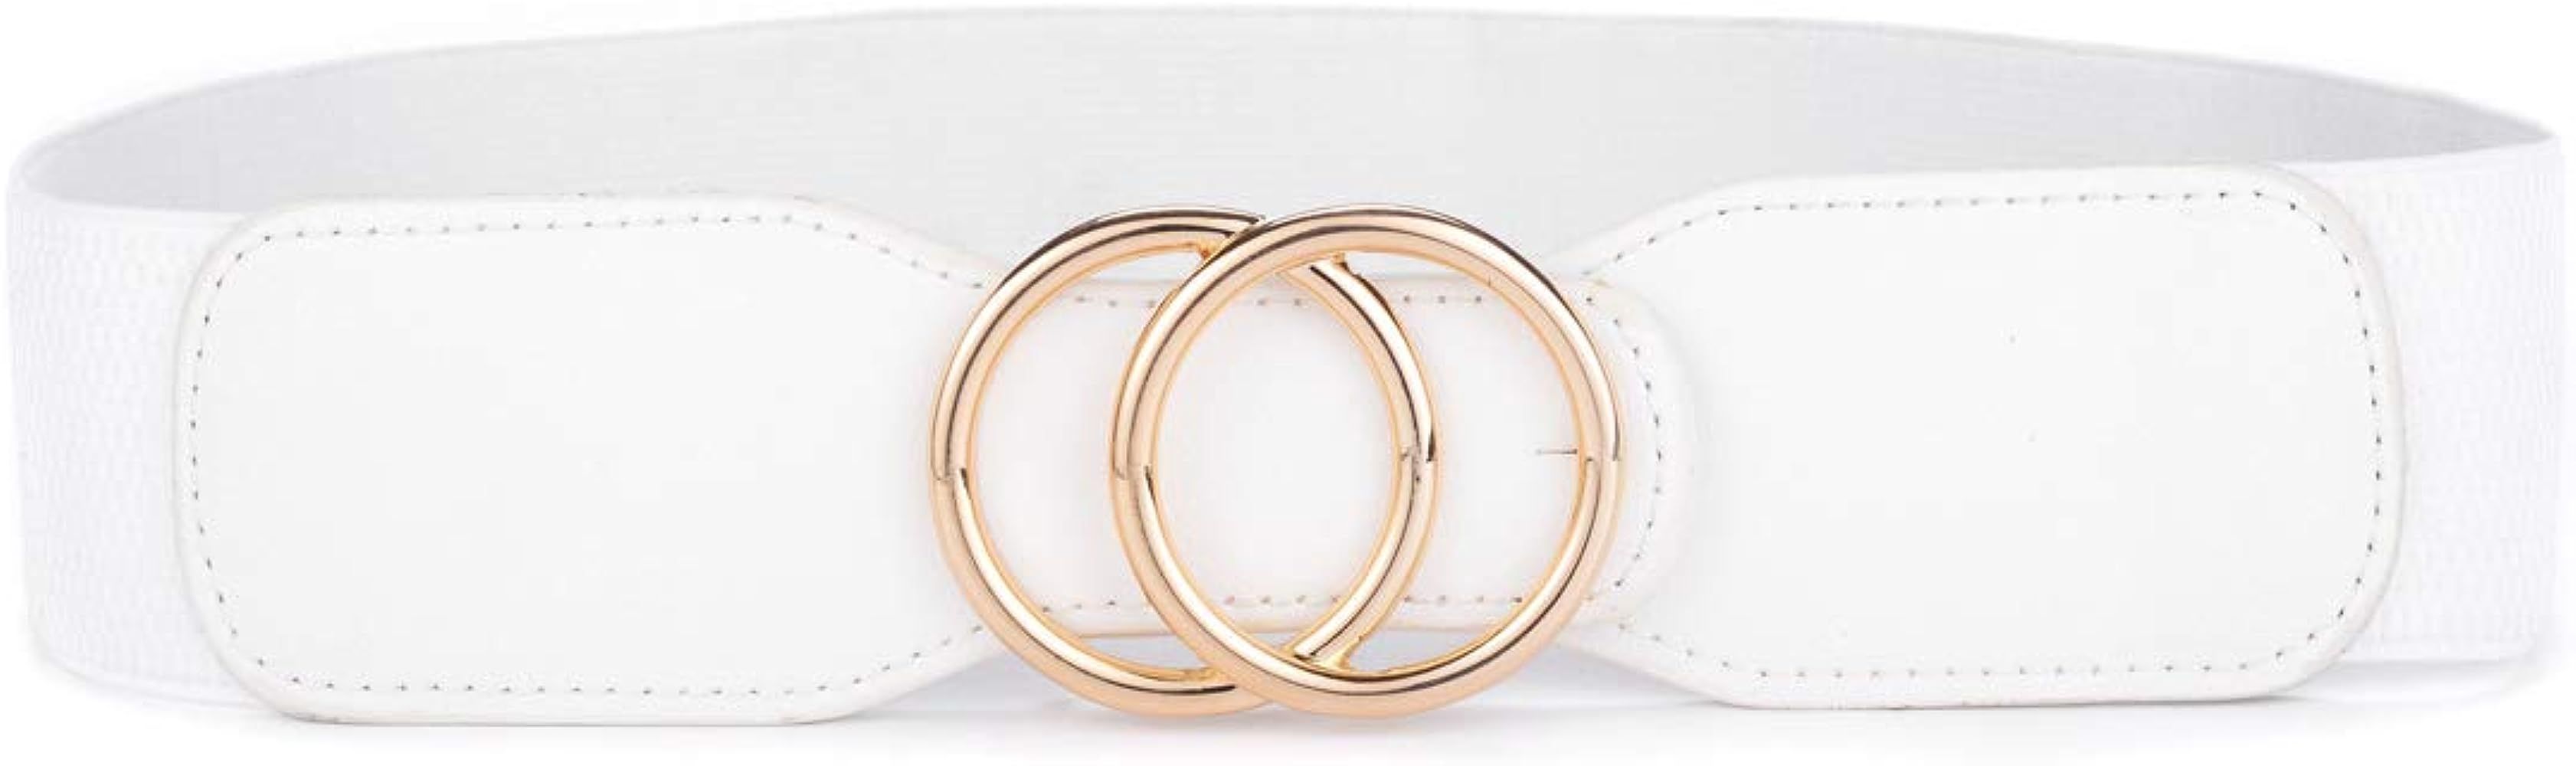 Beltox Women’s Elastic Stretch Wide Waist Belts w Double Rings Gold/Silver Buckle … | Amazon (US)